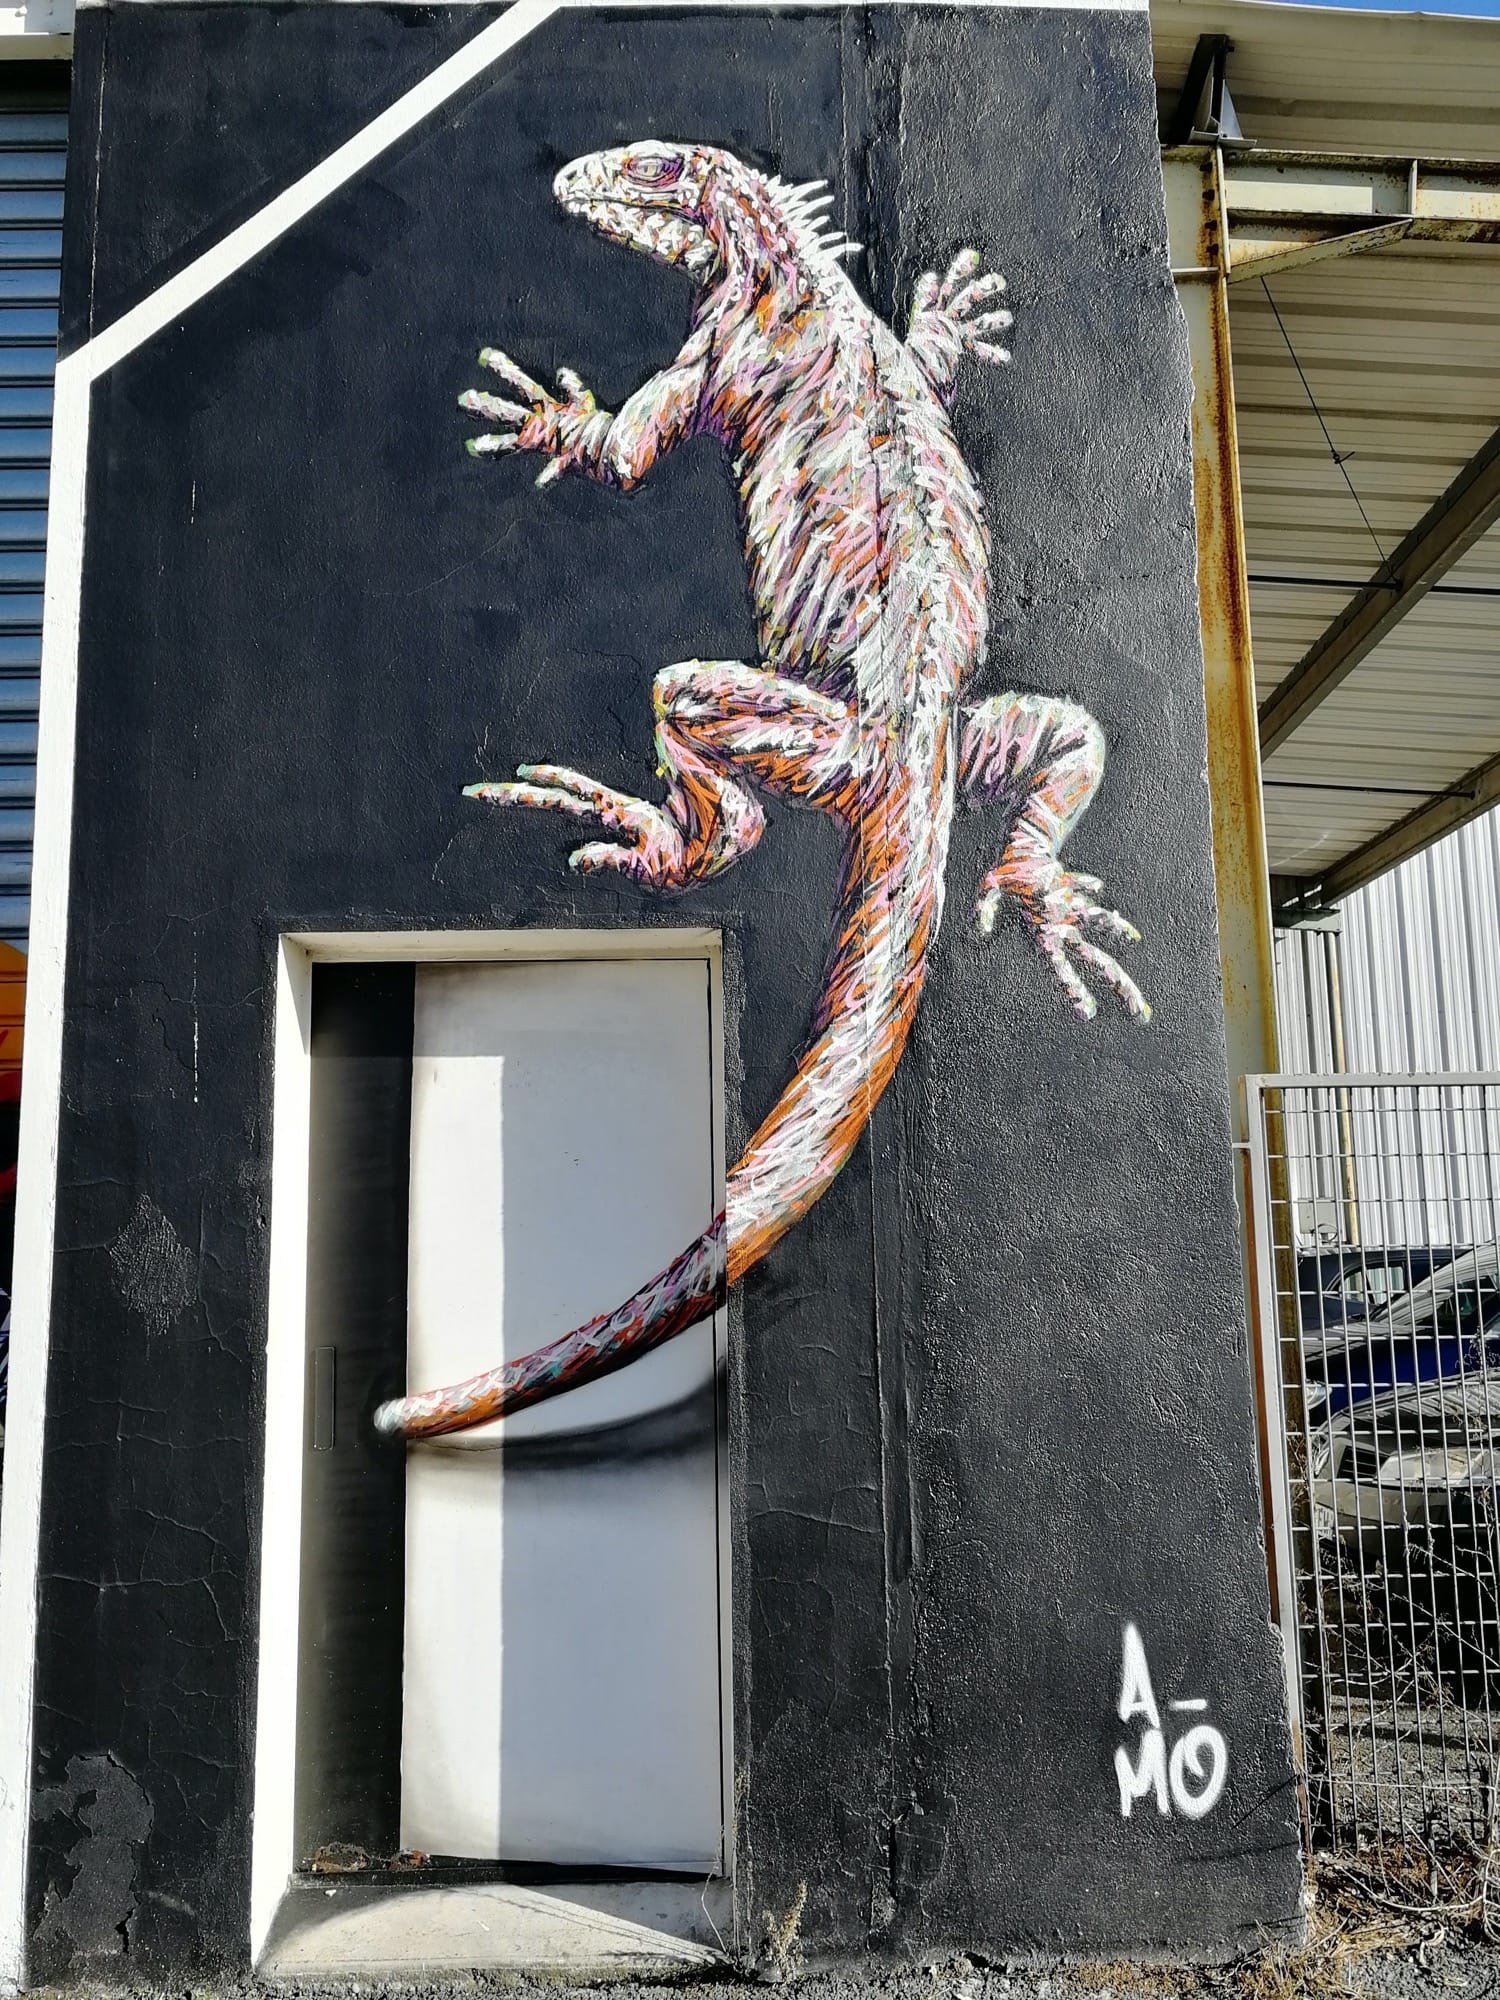 Graffiti 769 Lezard Gecko de A-mo capturé par Rabot à Bordeaux France